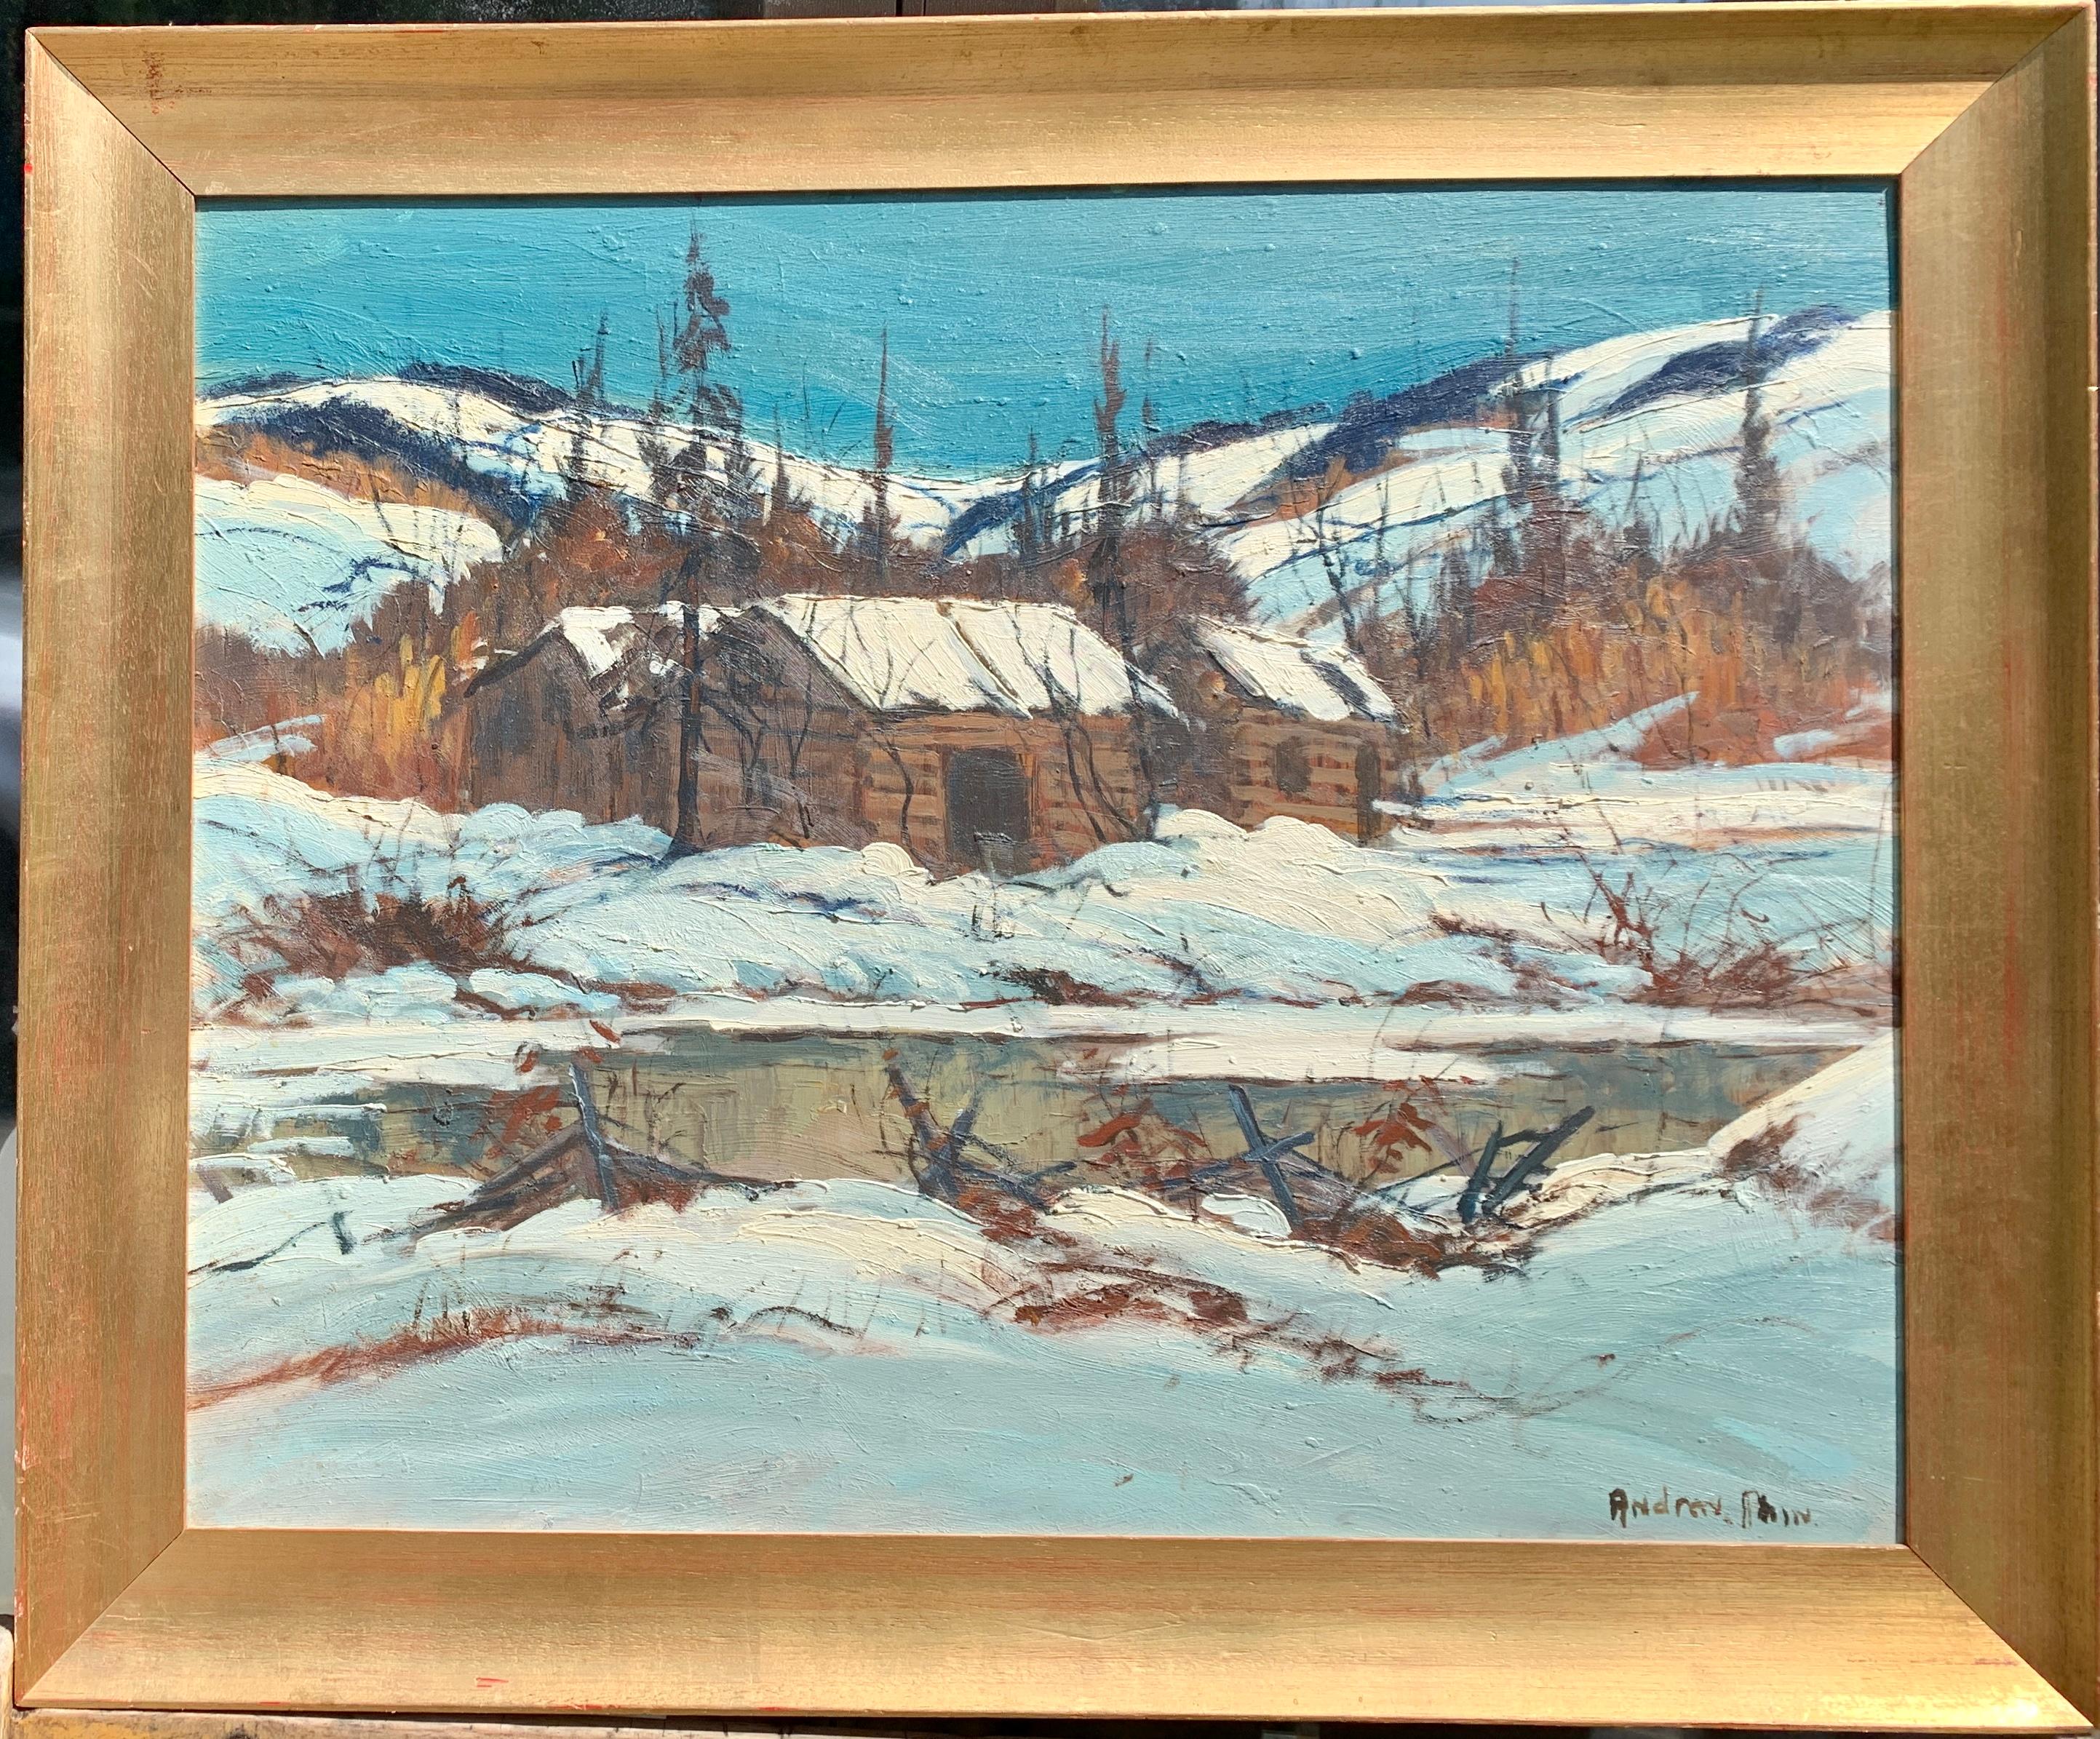 Figurative Painting 20th century Canadian School - Paysage canadien recouvert de neige du milieu du 20e siècle, Halliburton Highlands Ontario